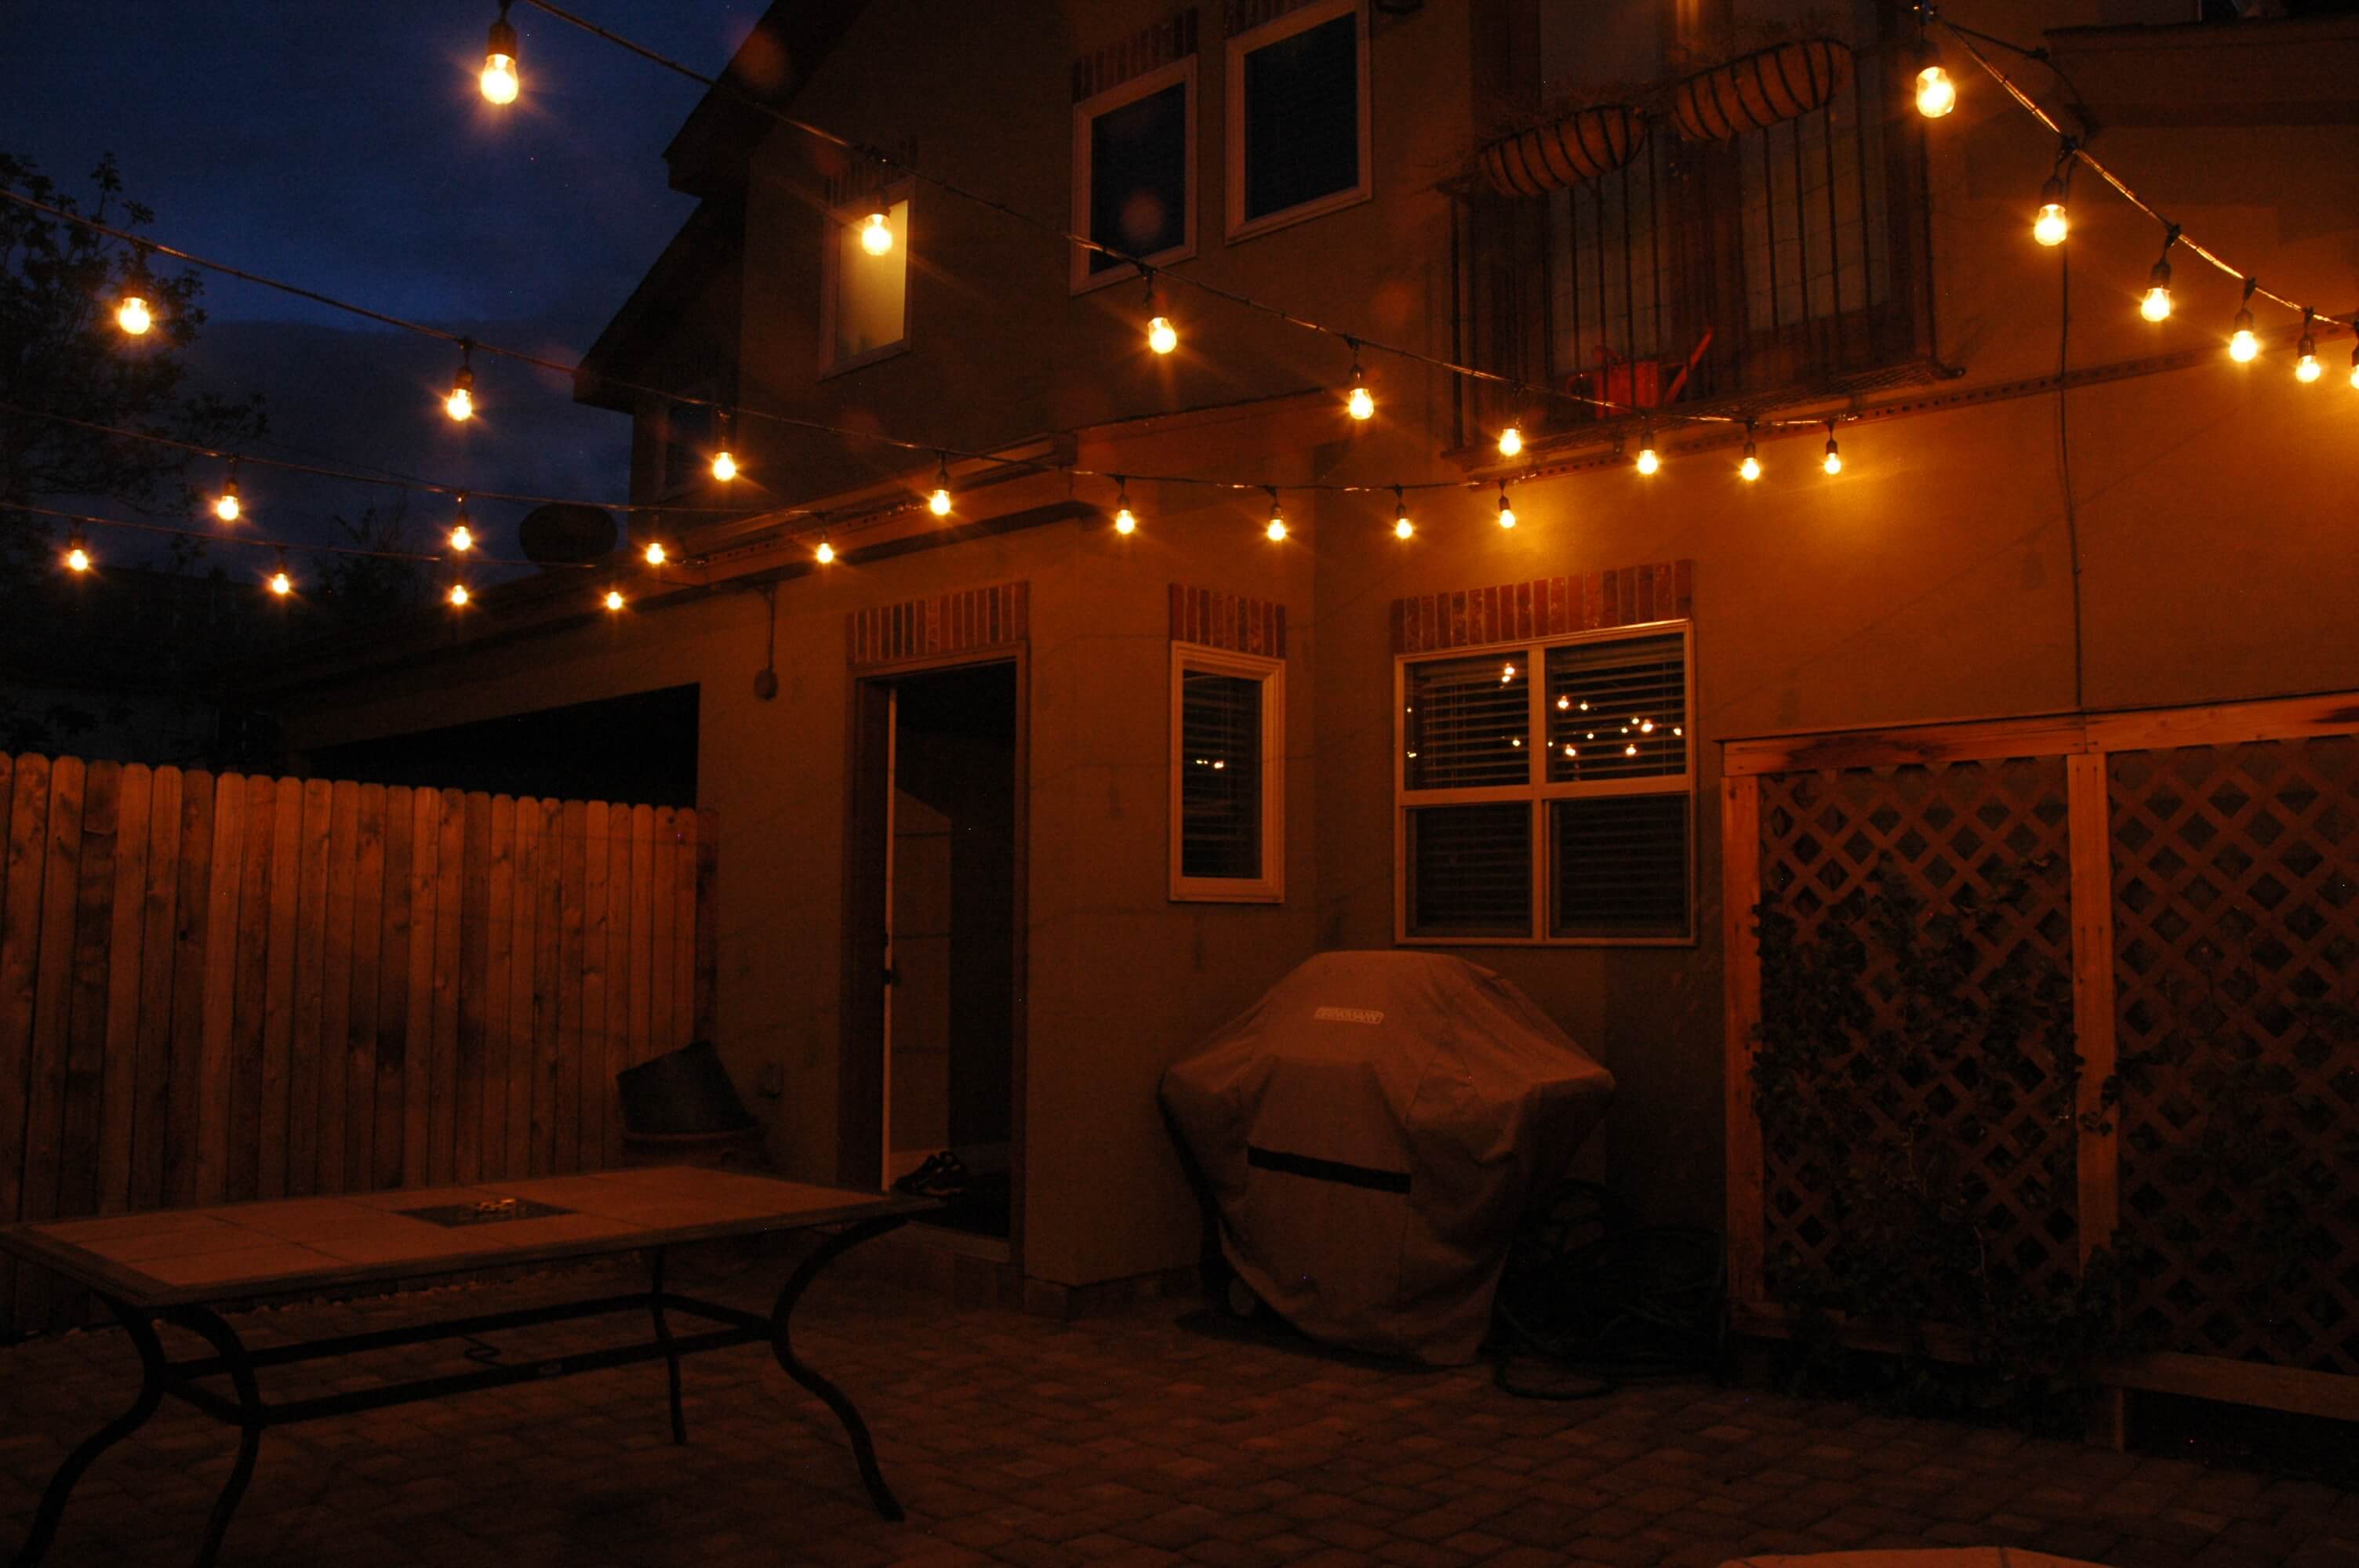 Courtyard festival lighting